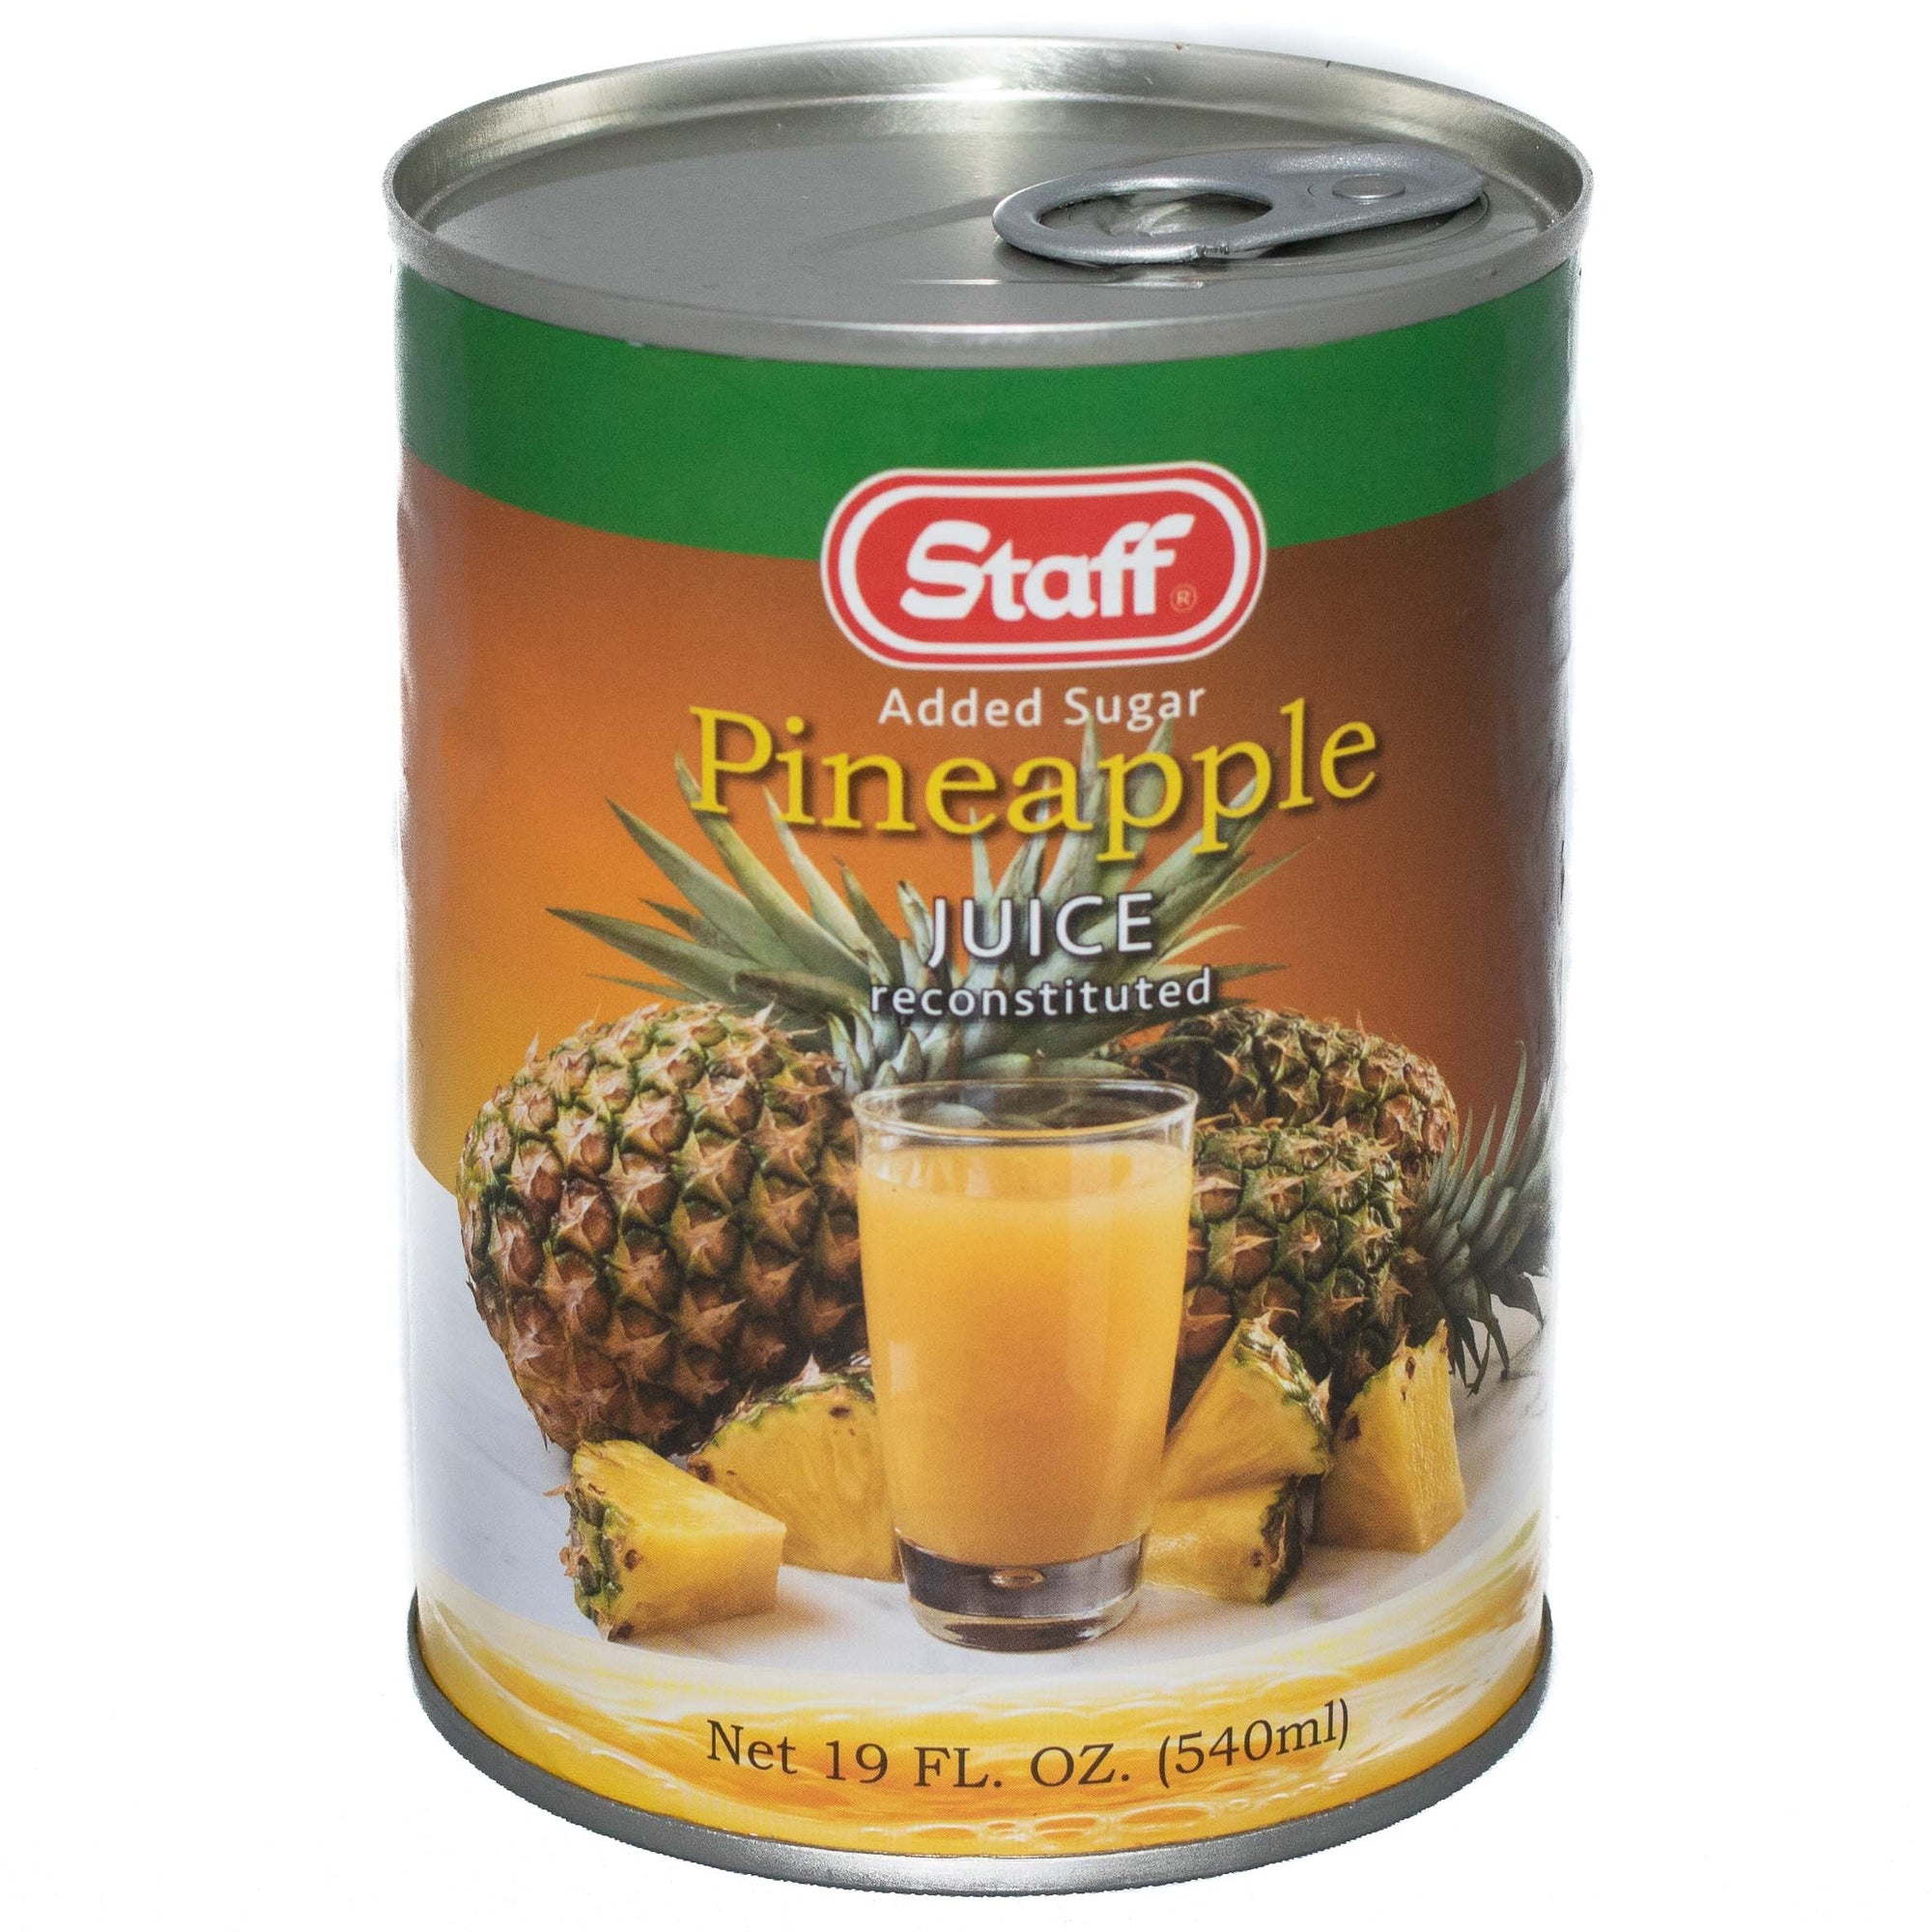 STAFF Pineapple Juice 19oz